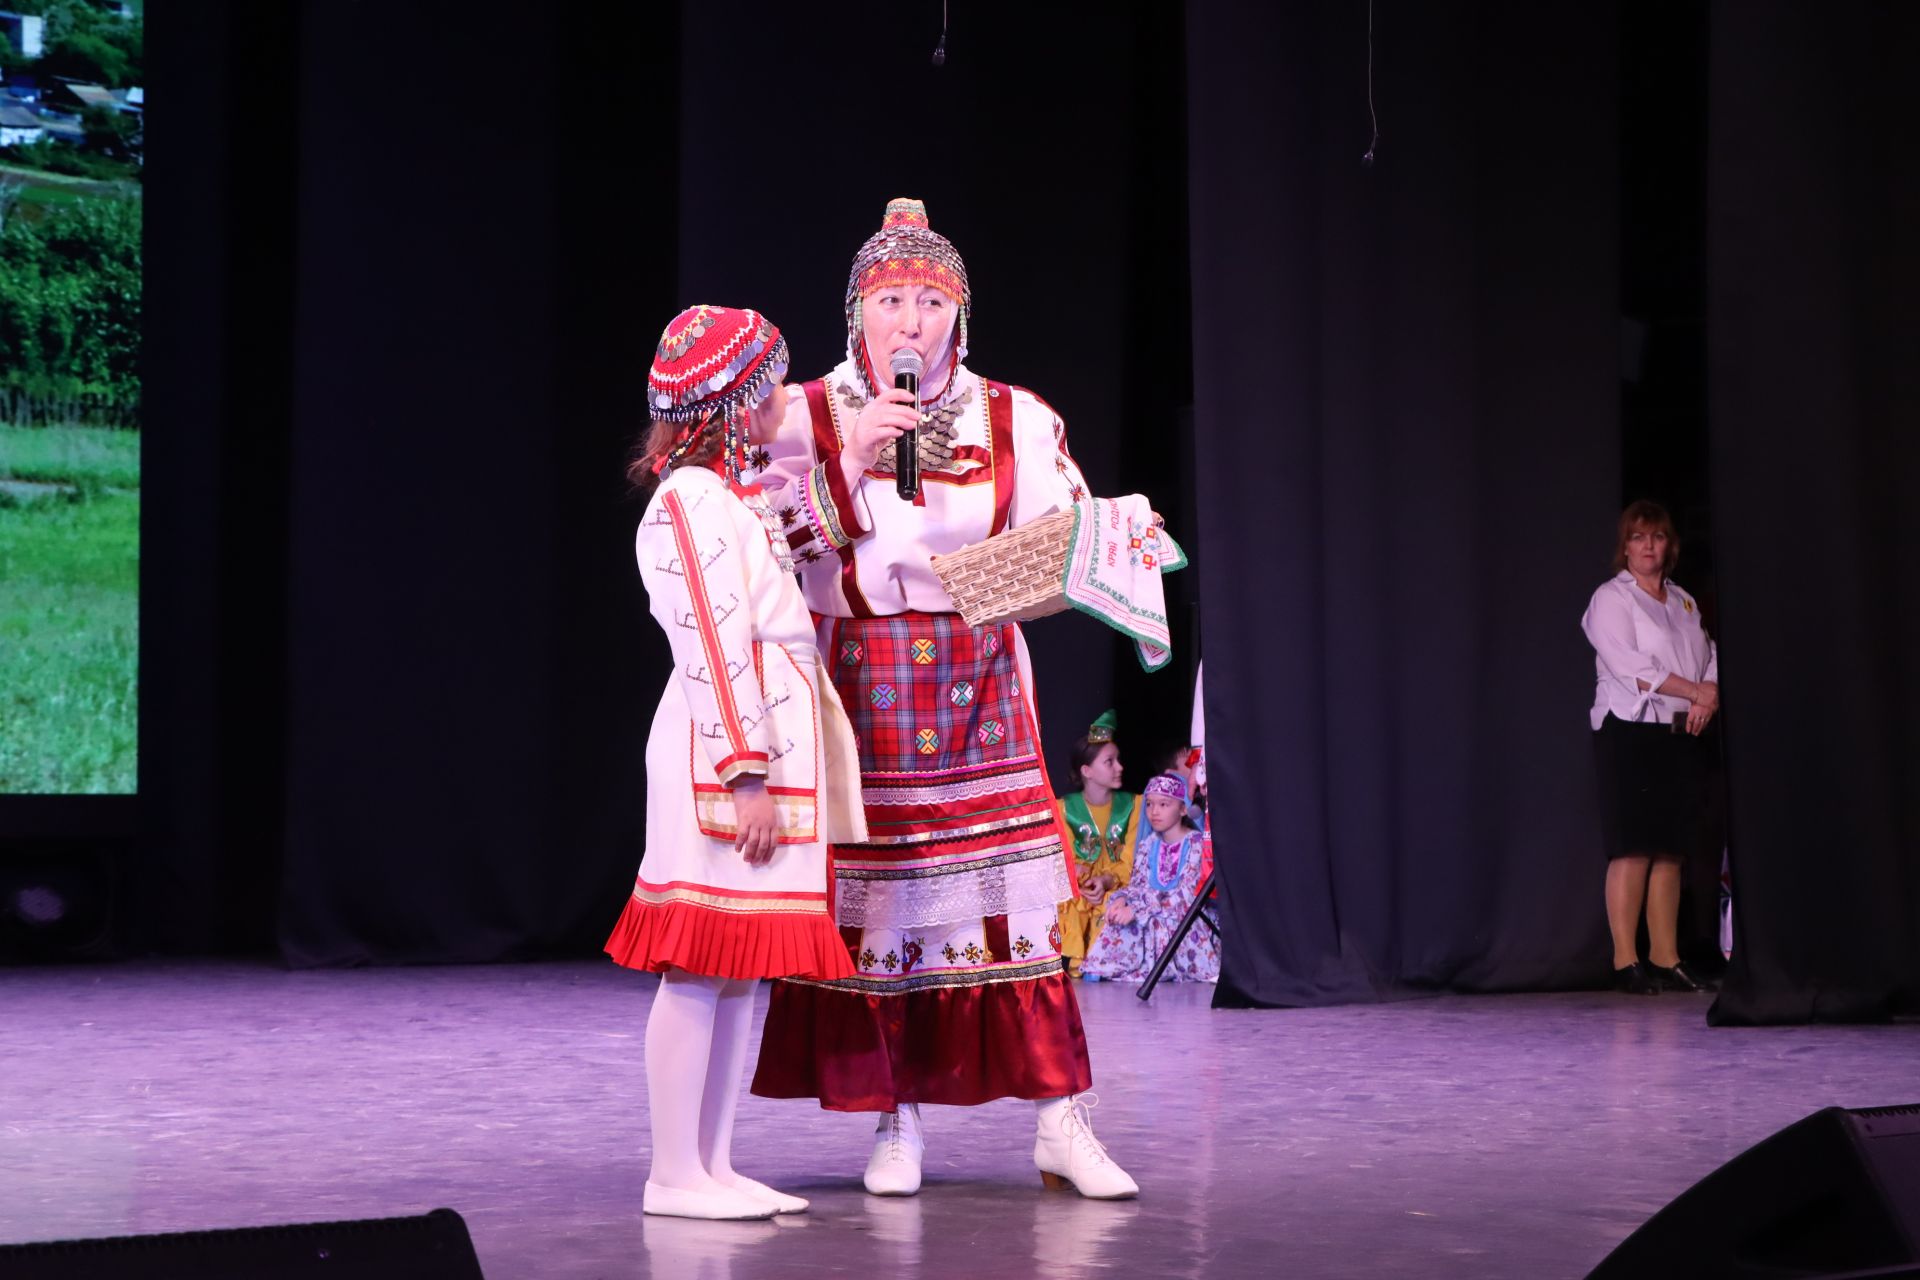 Стали известны победители фестиваля «Эхо веков в истории семьи — Тарихта без эзлебез»